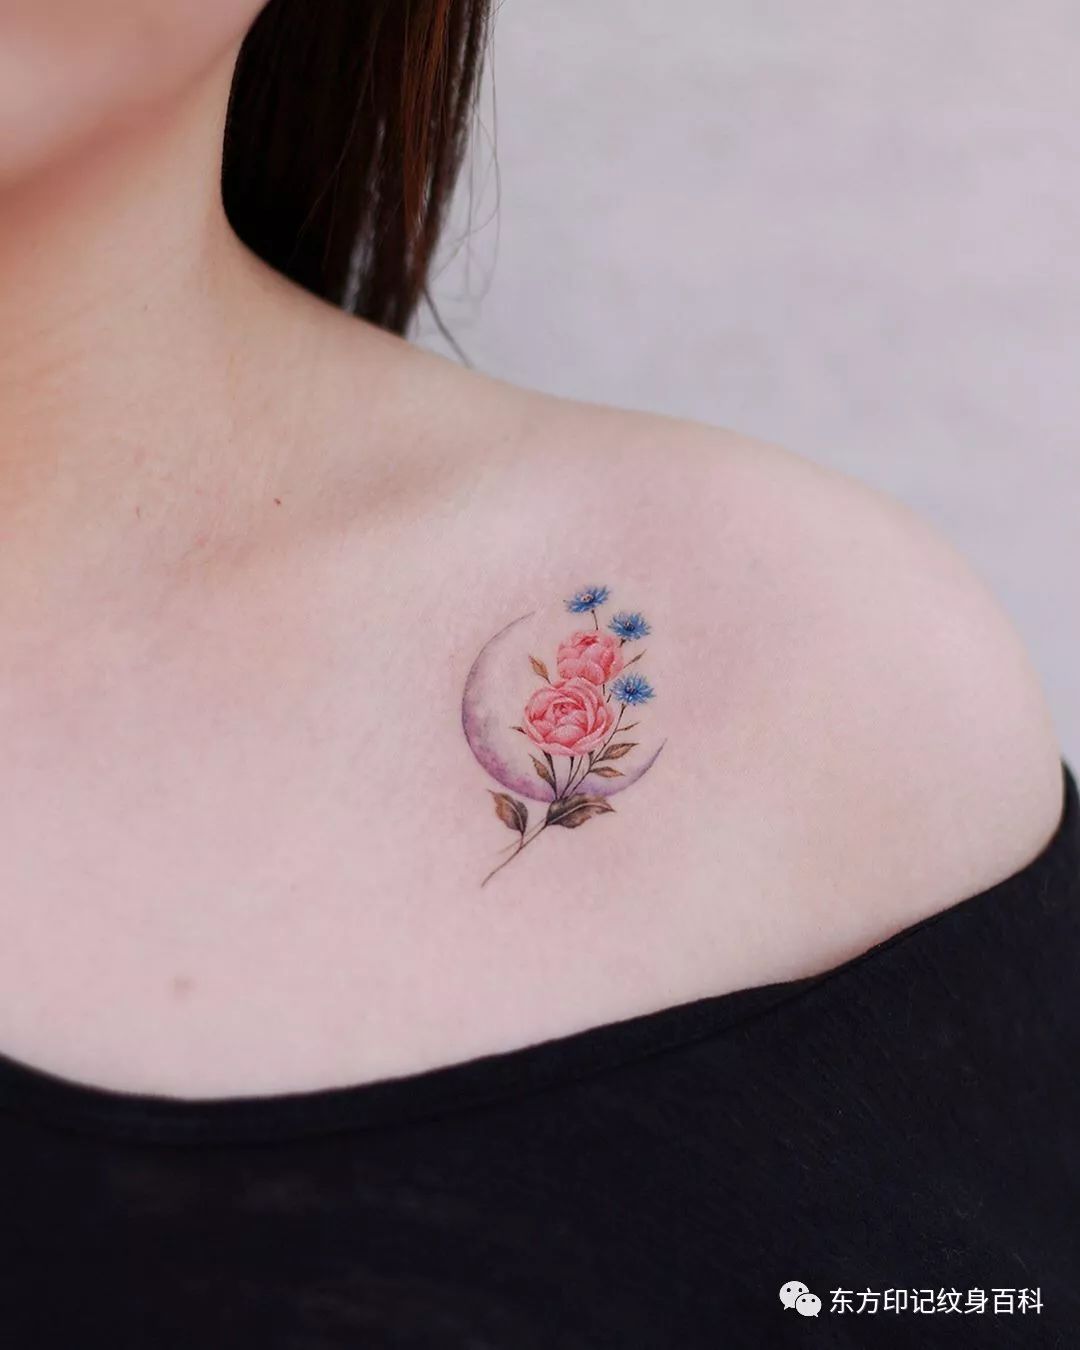 女孩子锁骨上的纹身不用纹的多么复杂简简单单的一朵小花甚至是几朵